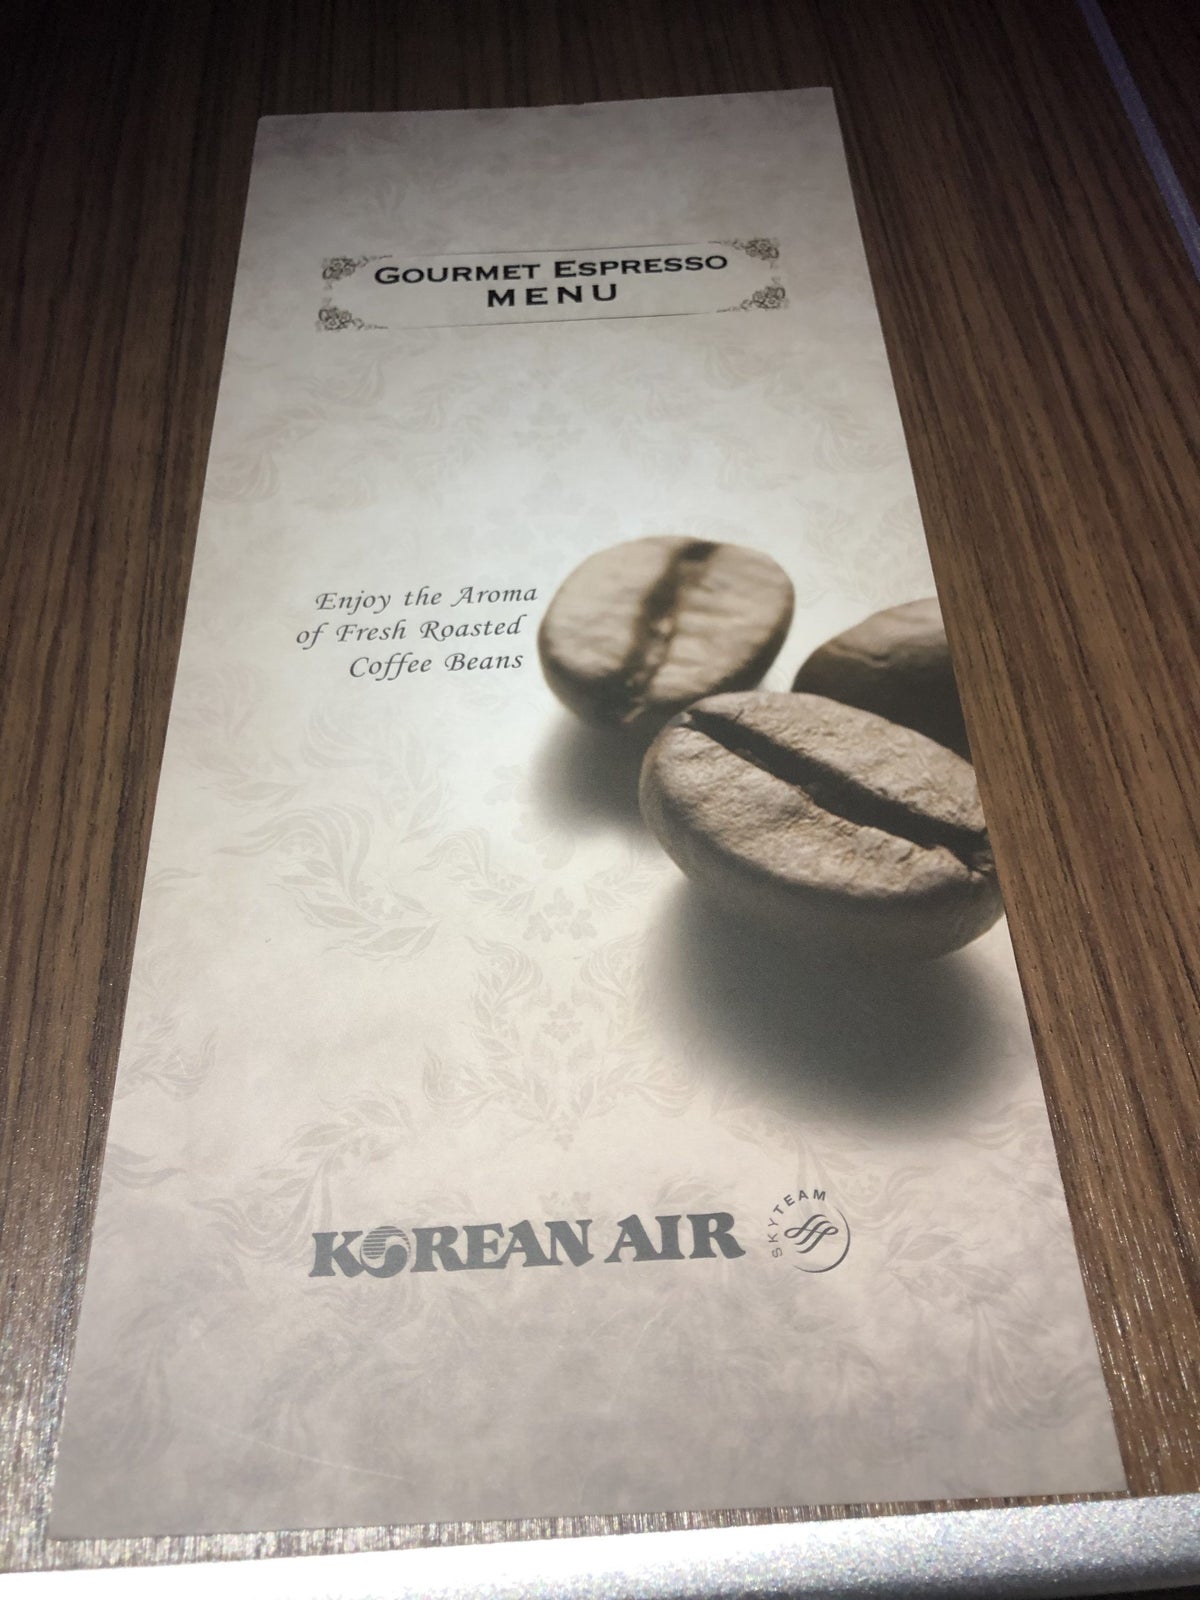 Korean Air first class coffee menu title page